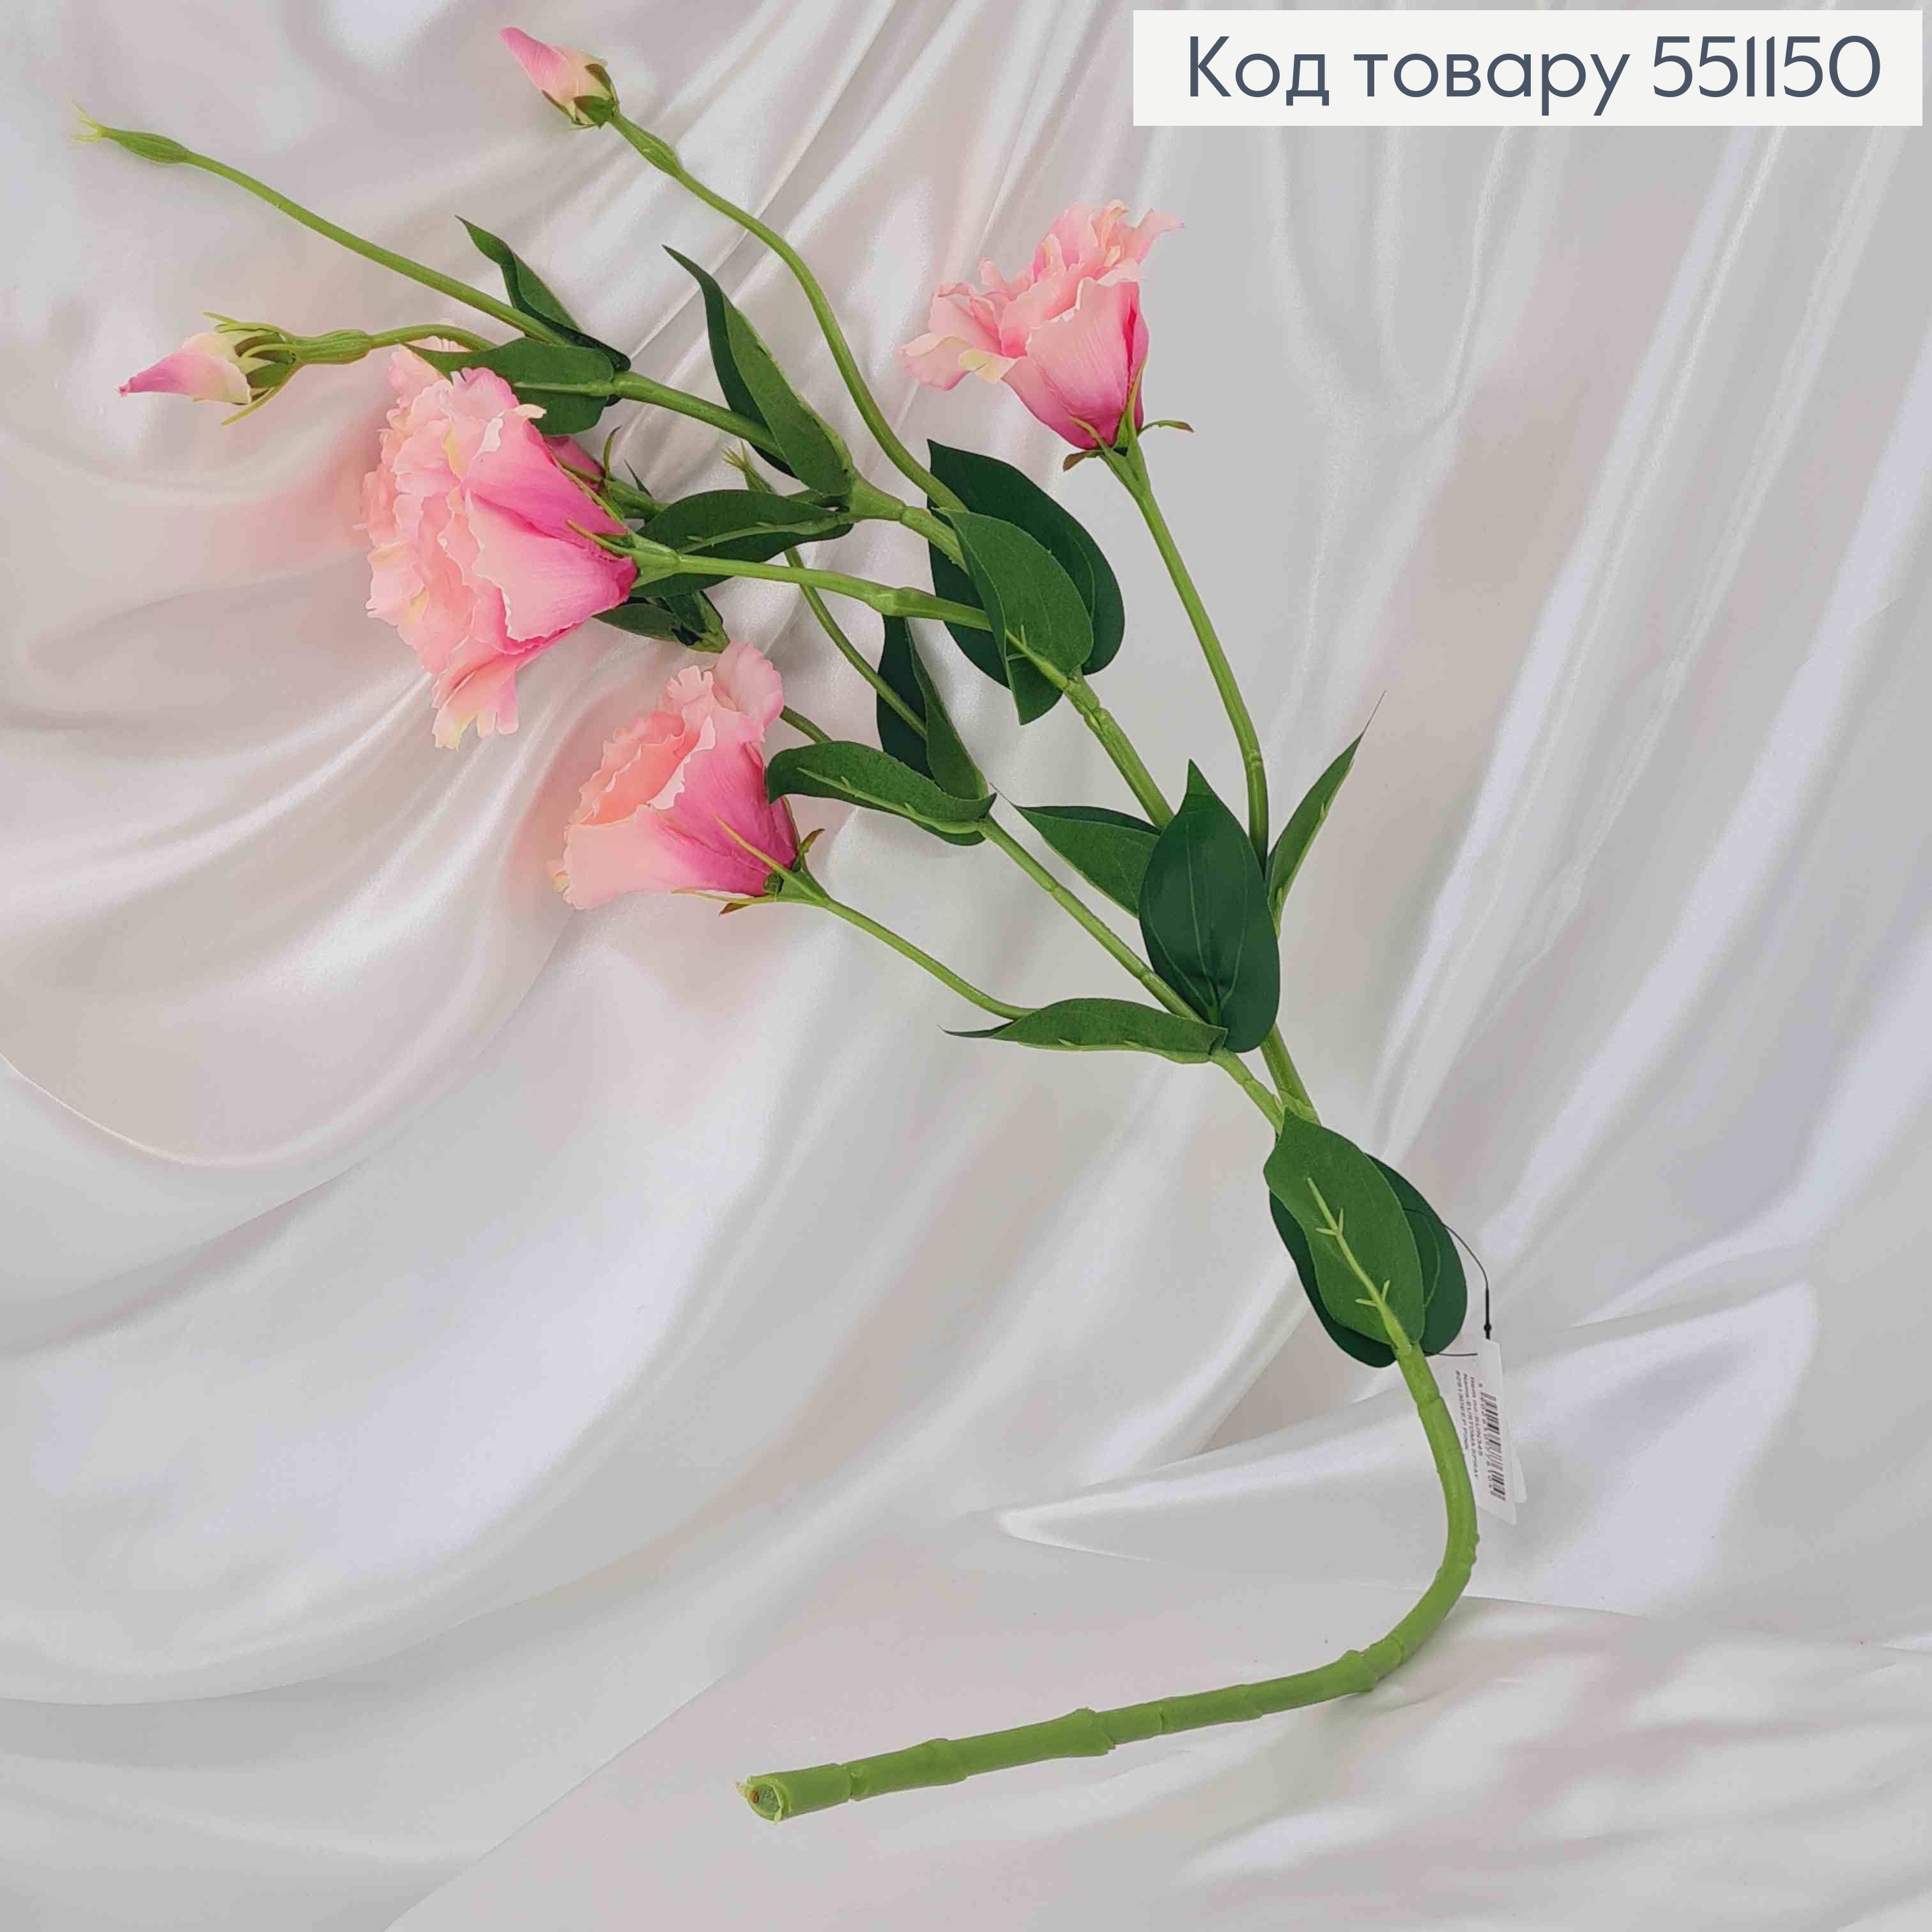 Искусственный цветок Эустомы, РОЗОВОЕ ОМБРЕ, 4 цветка + 3 бутона, на металлическом стержне, 82см. 551150 фото 2